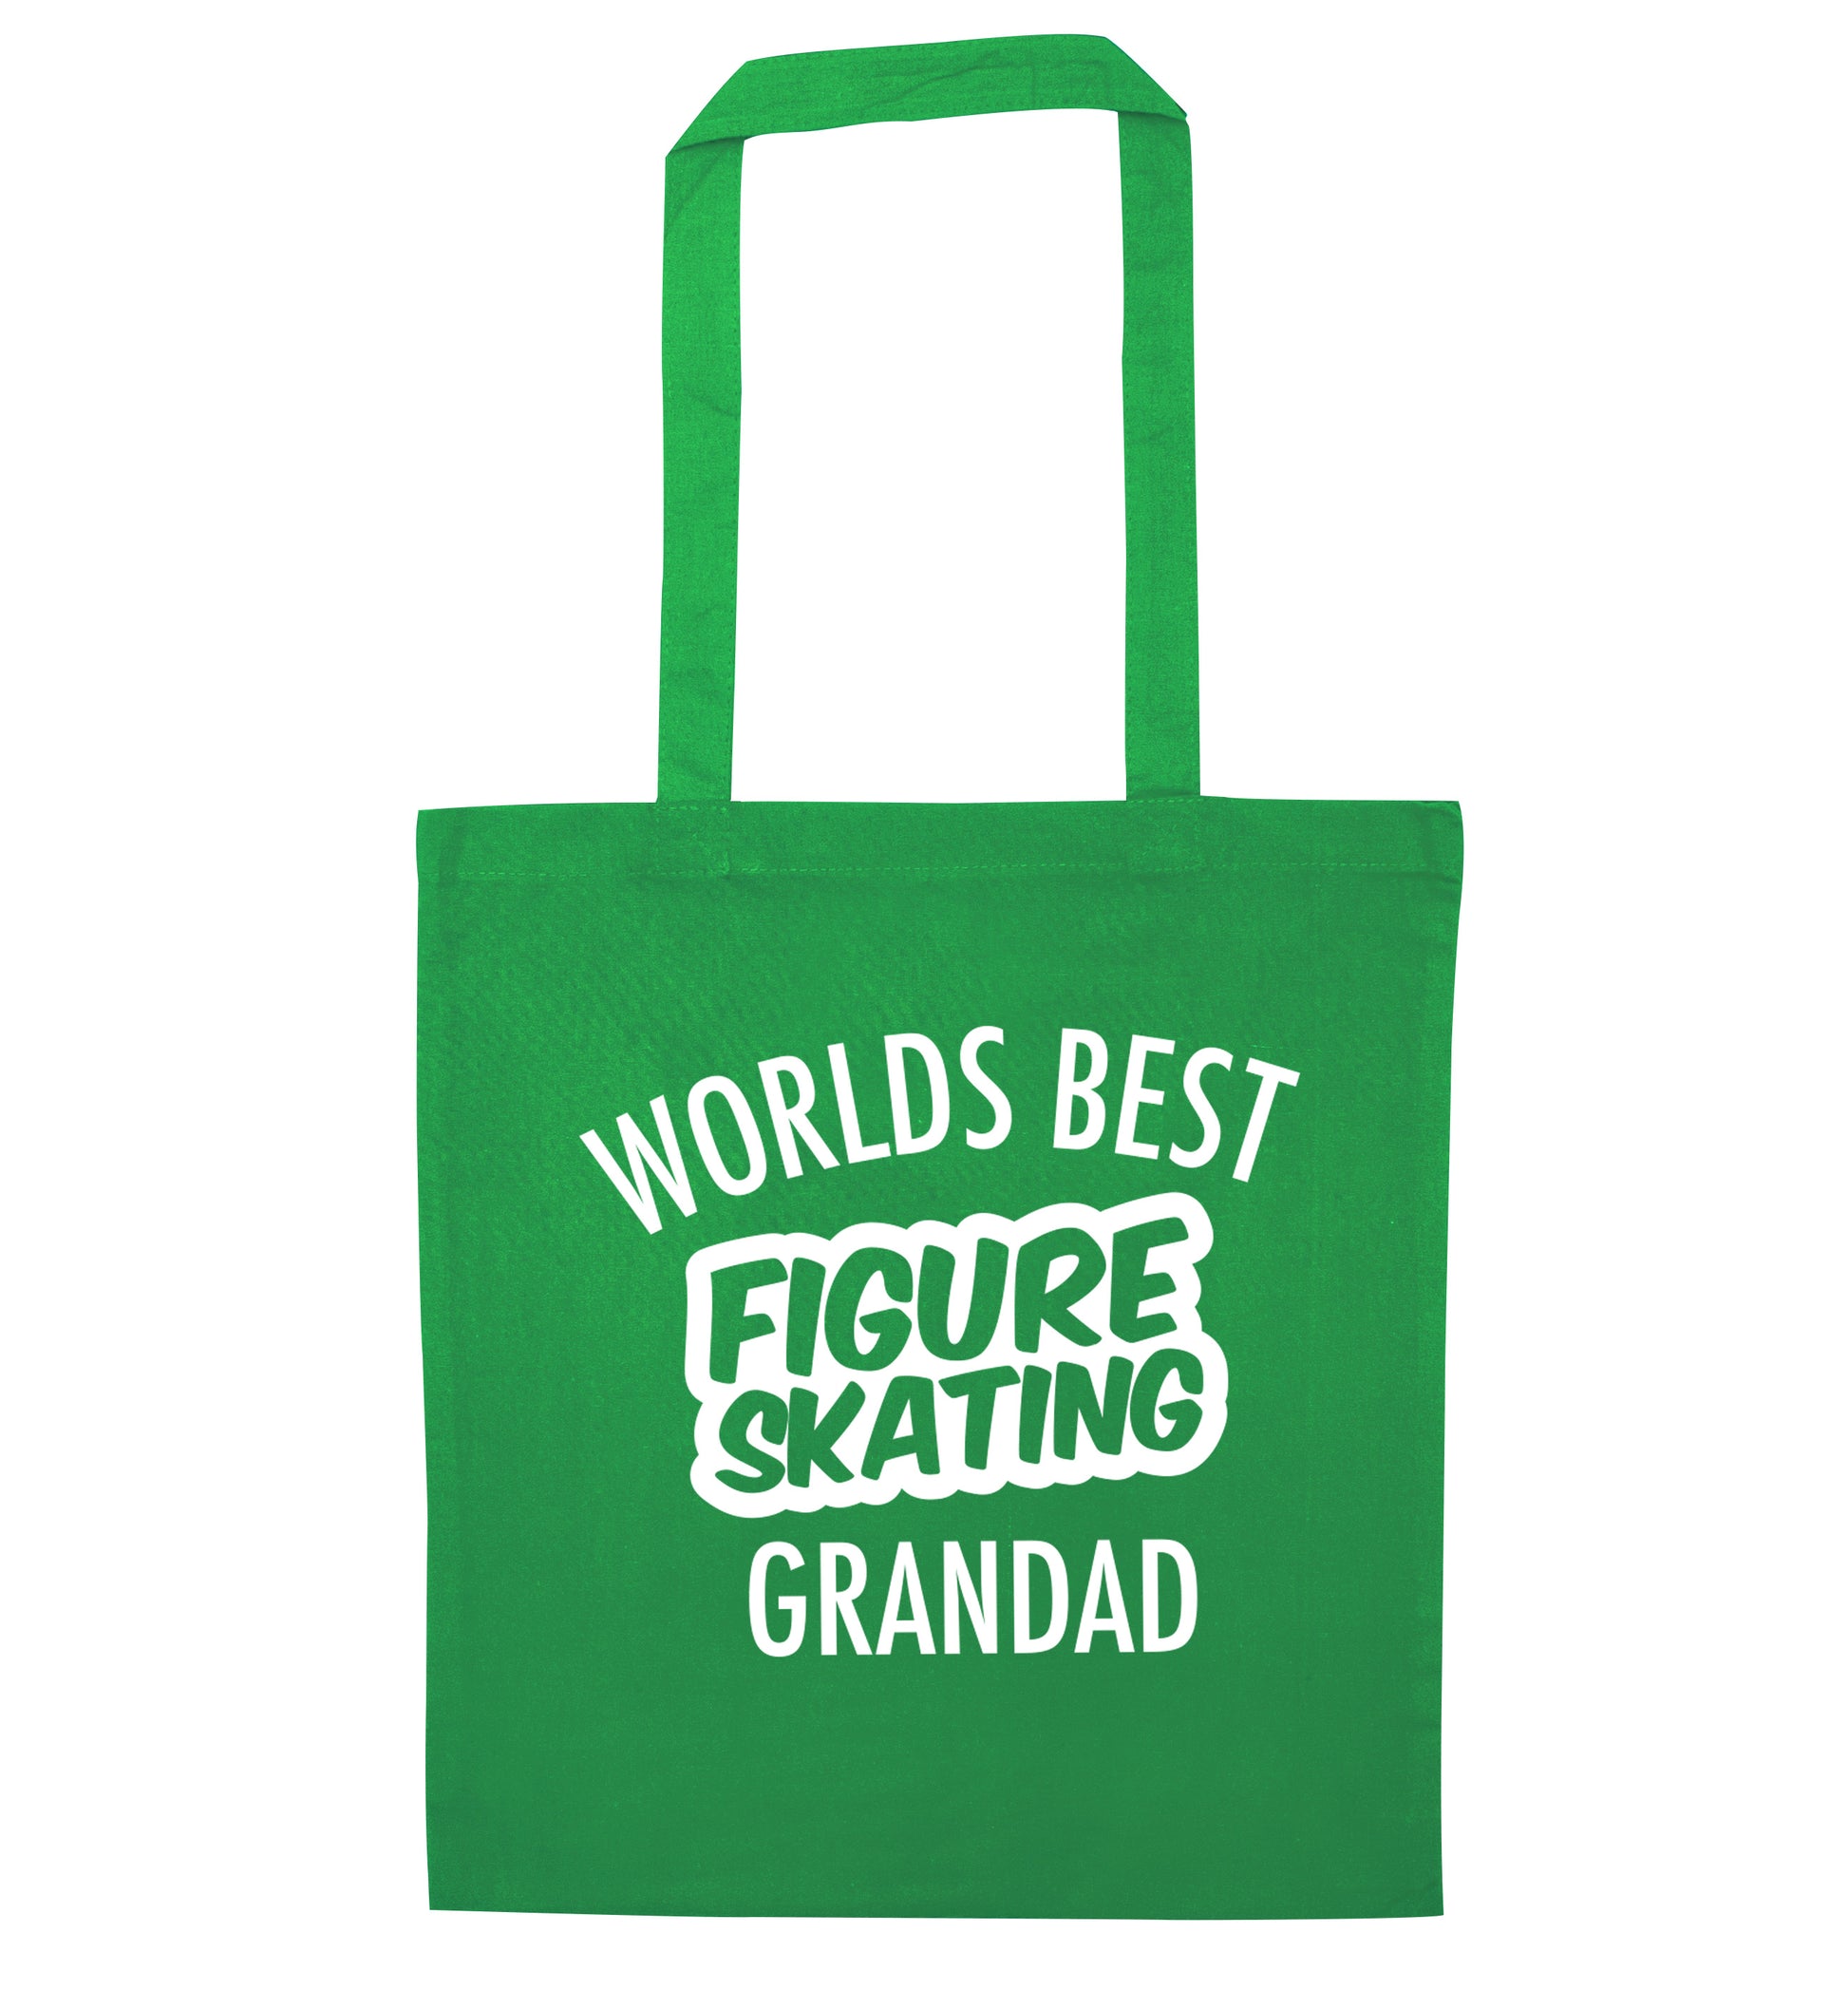 Worlds best figure skating grandad green tote bag